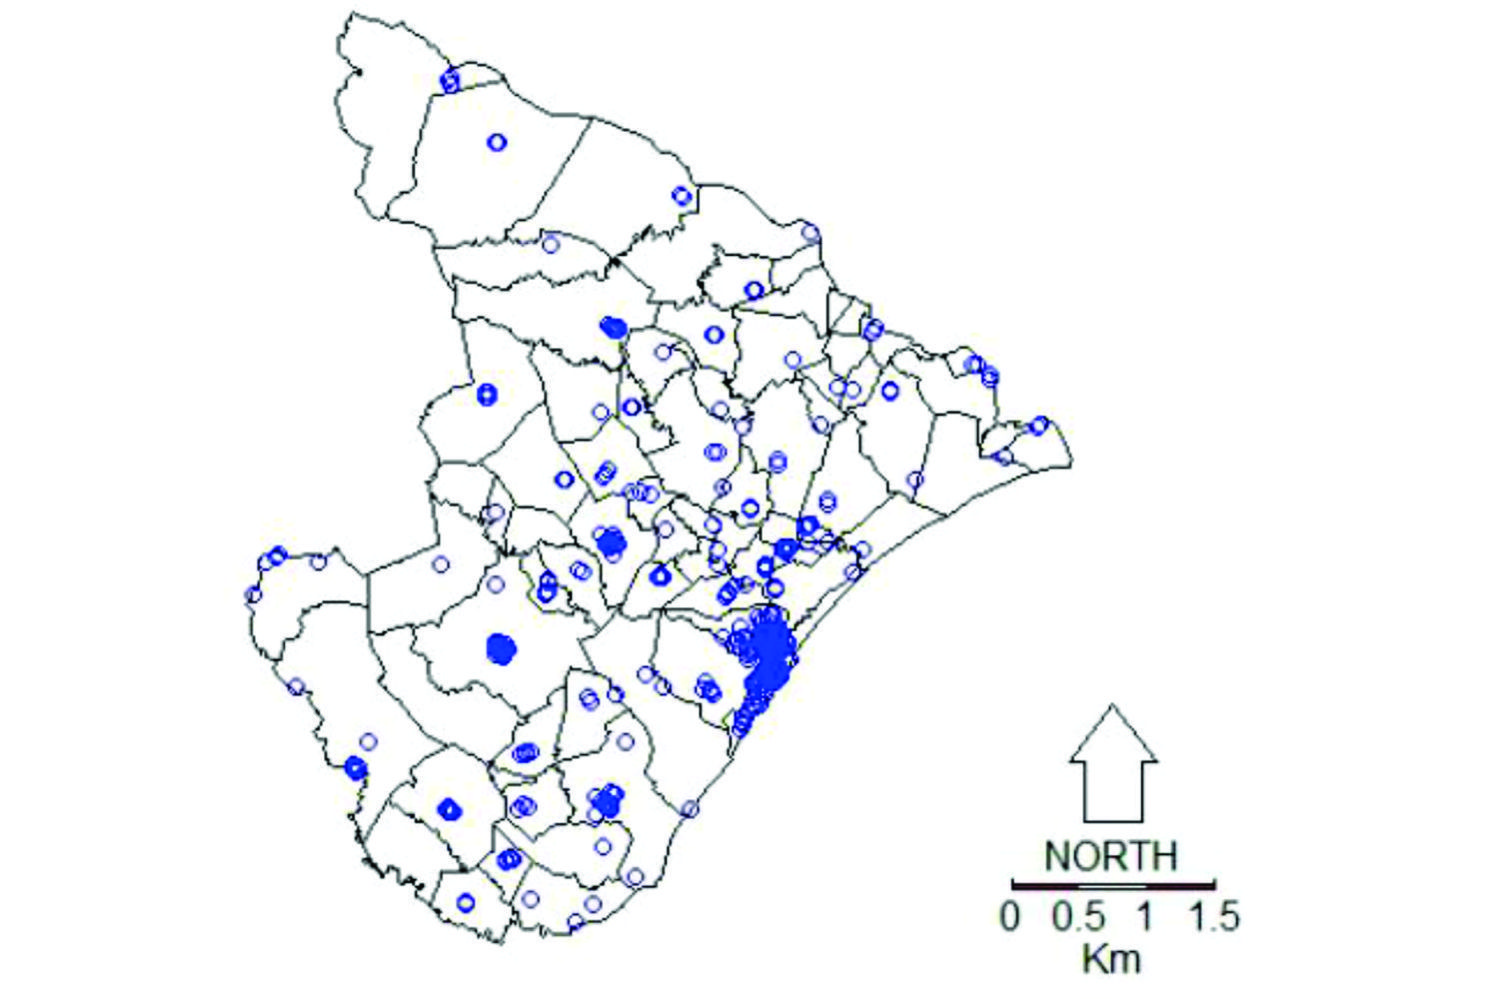 Distribuição por município dos indivíduos heterozigotos para doença falciforme em Sergipe, 2011-2012 (Fonte: trabalho da pesquisadora)